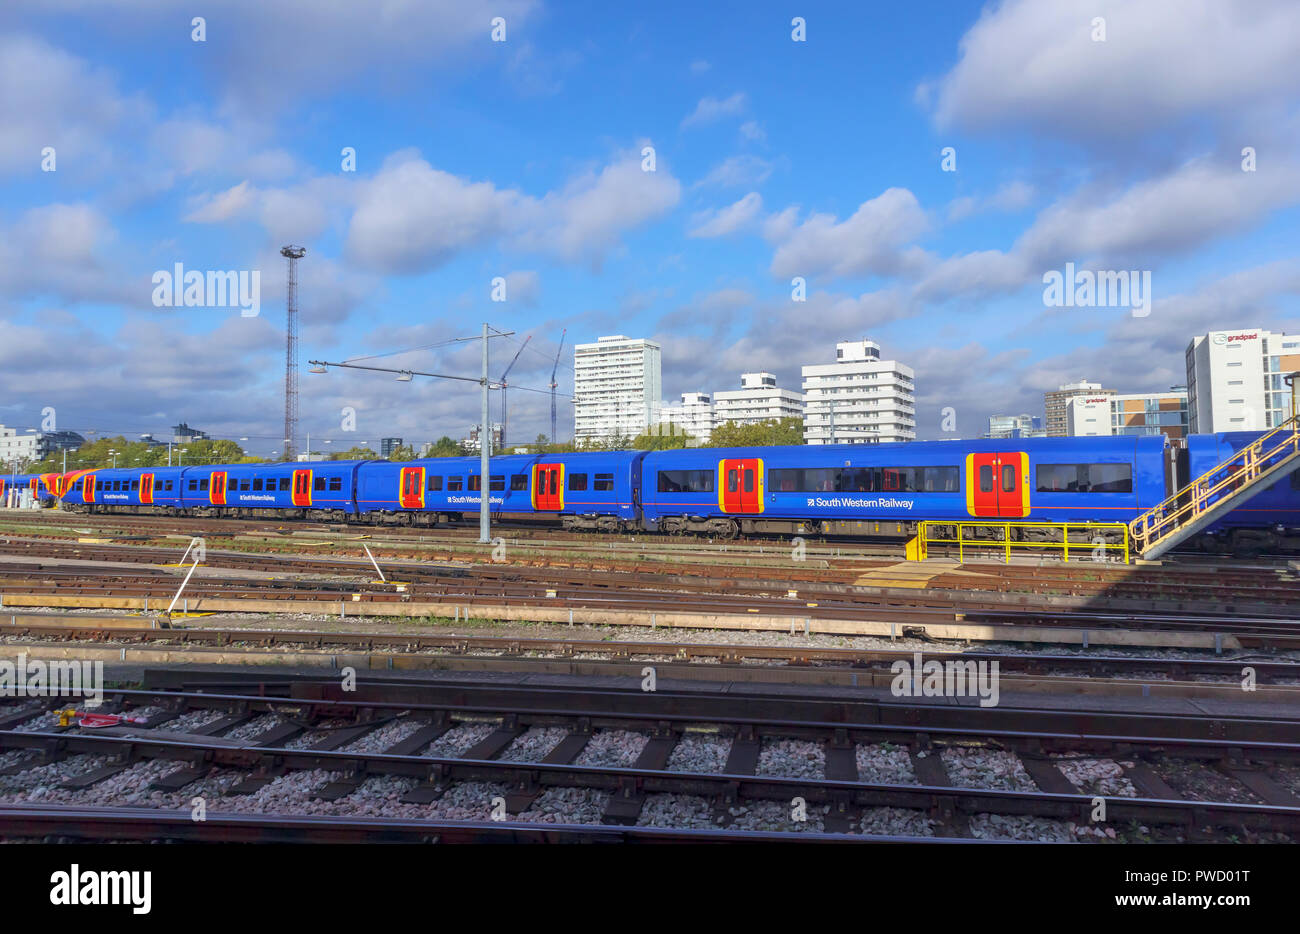 Bunte blau South Western Railway suburban Nahverkehrszug und Kutschen in Rangierbahnhofs in Clapham Junction Station, London, UK an einem sonnigen Tag Stockfoto